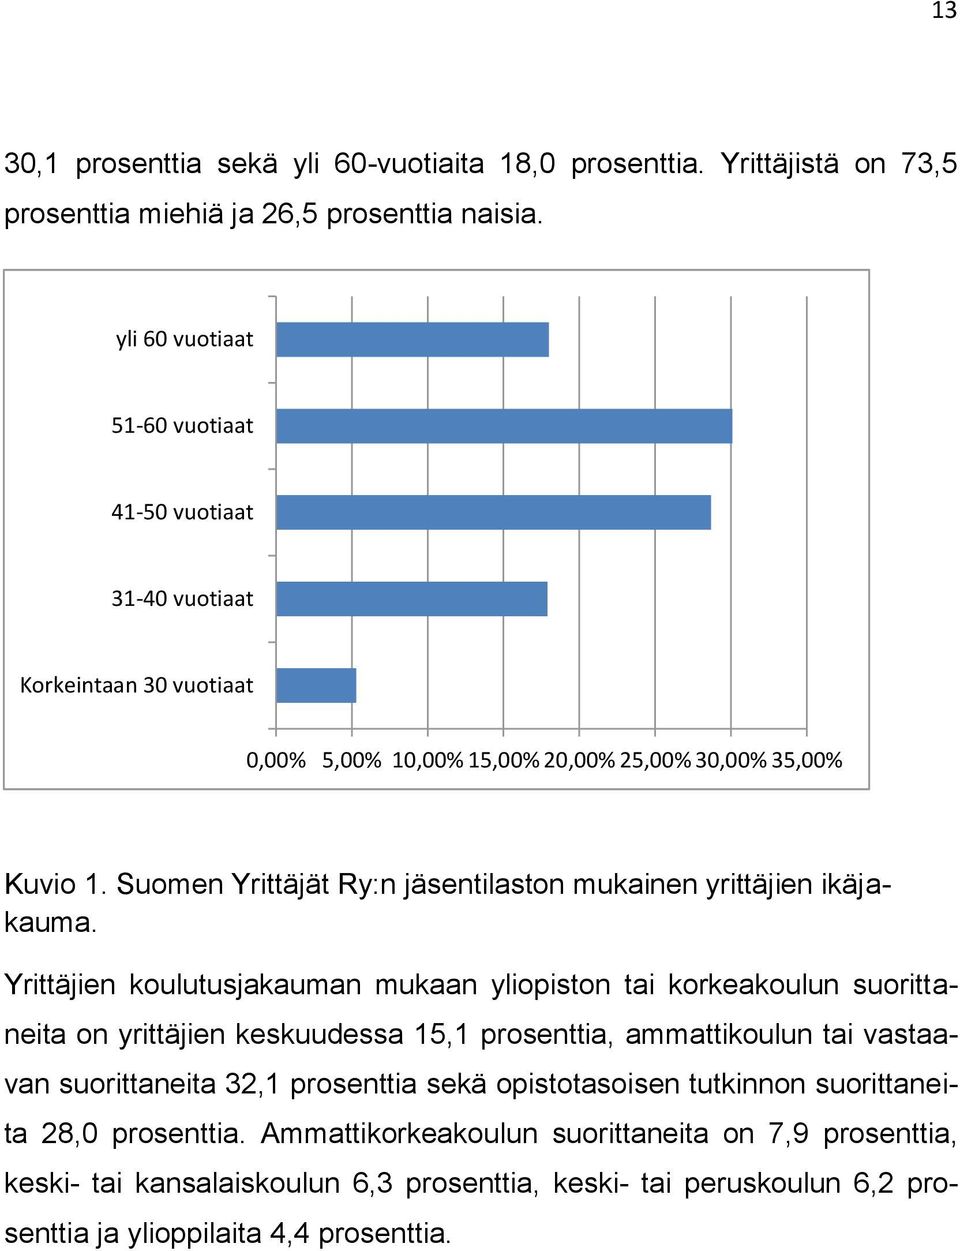 Suomen Yrittäjät Ry:n jäsentilaston mukainen yrittäjien ikäjakauma.